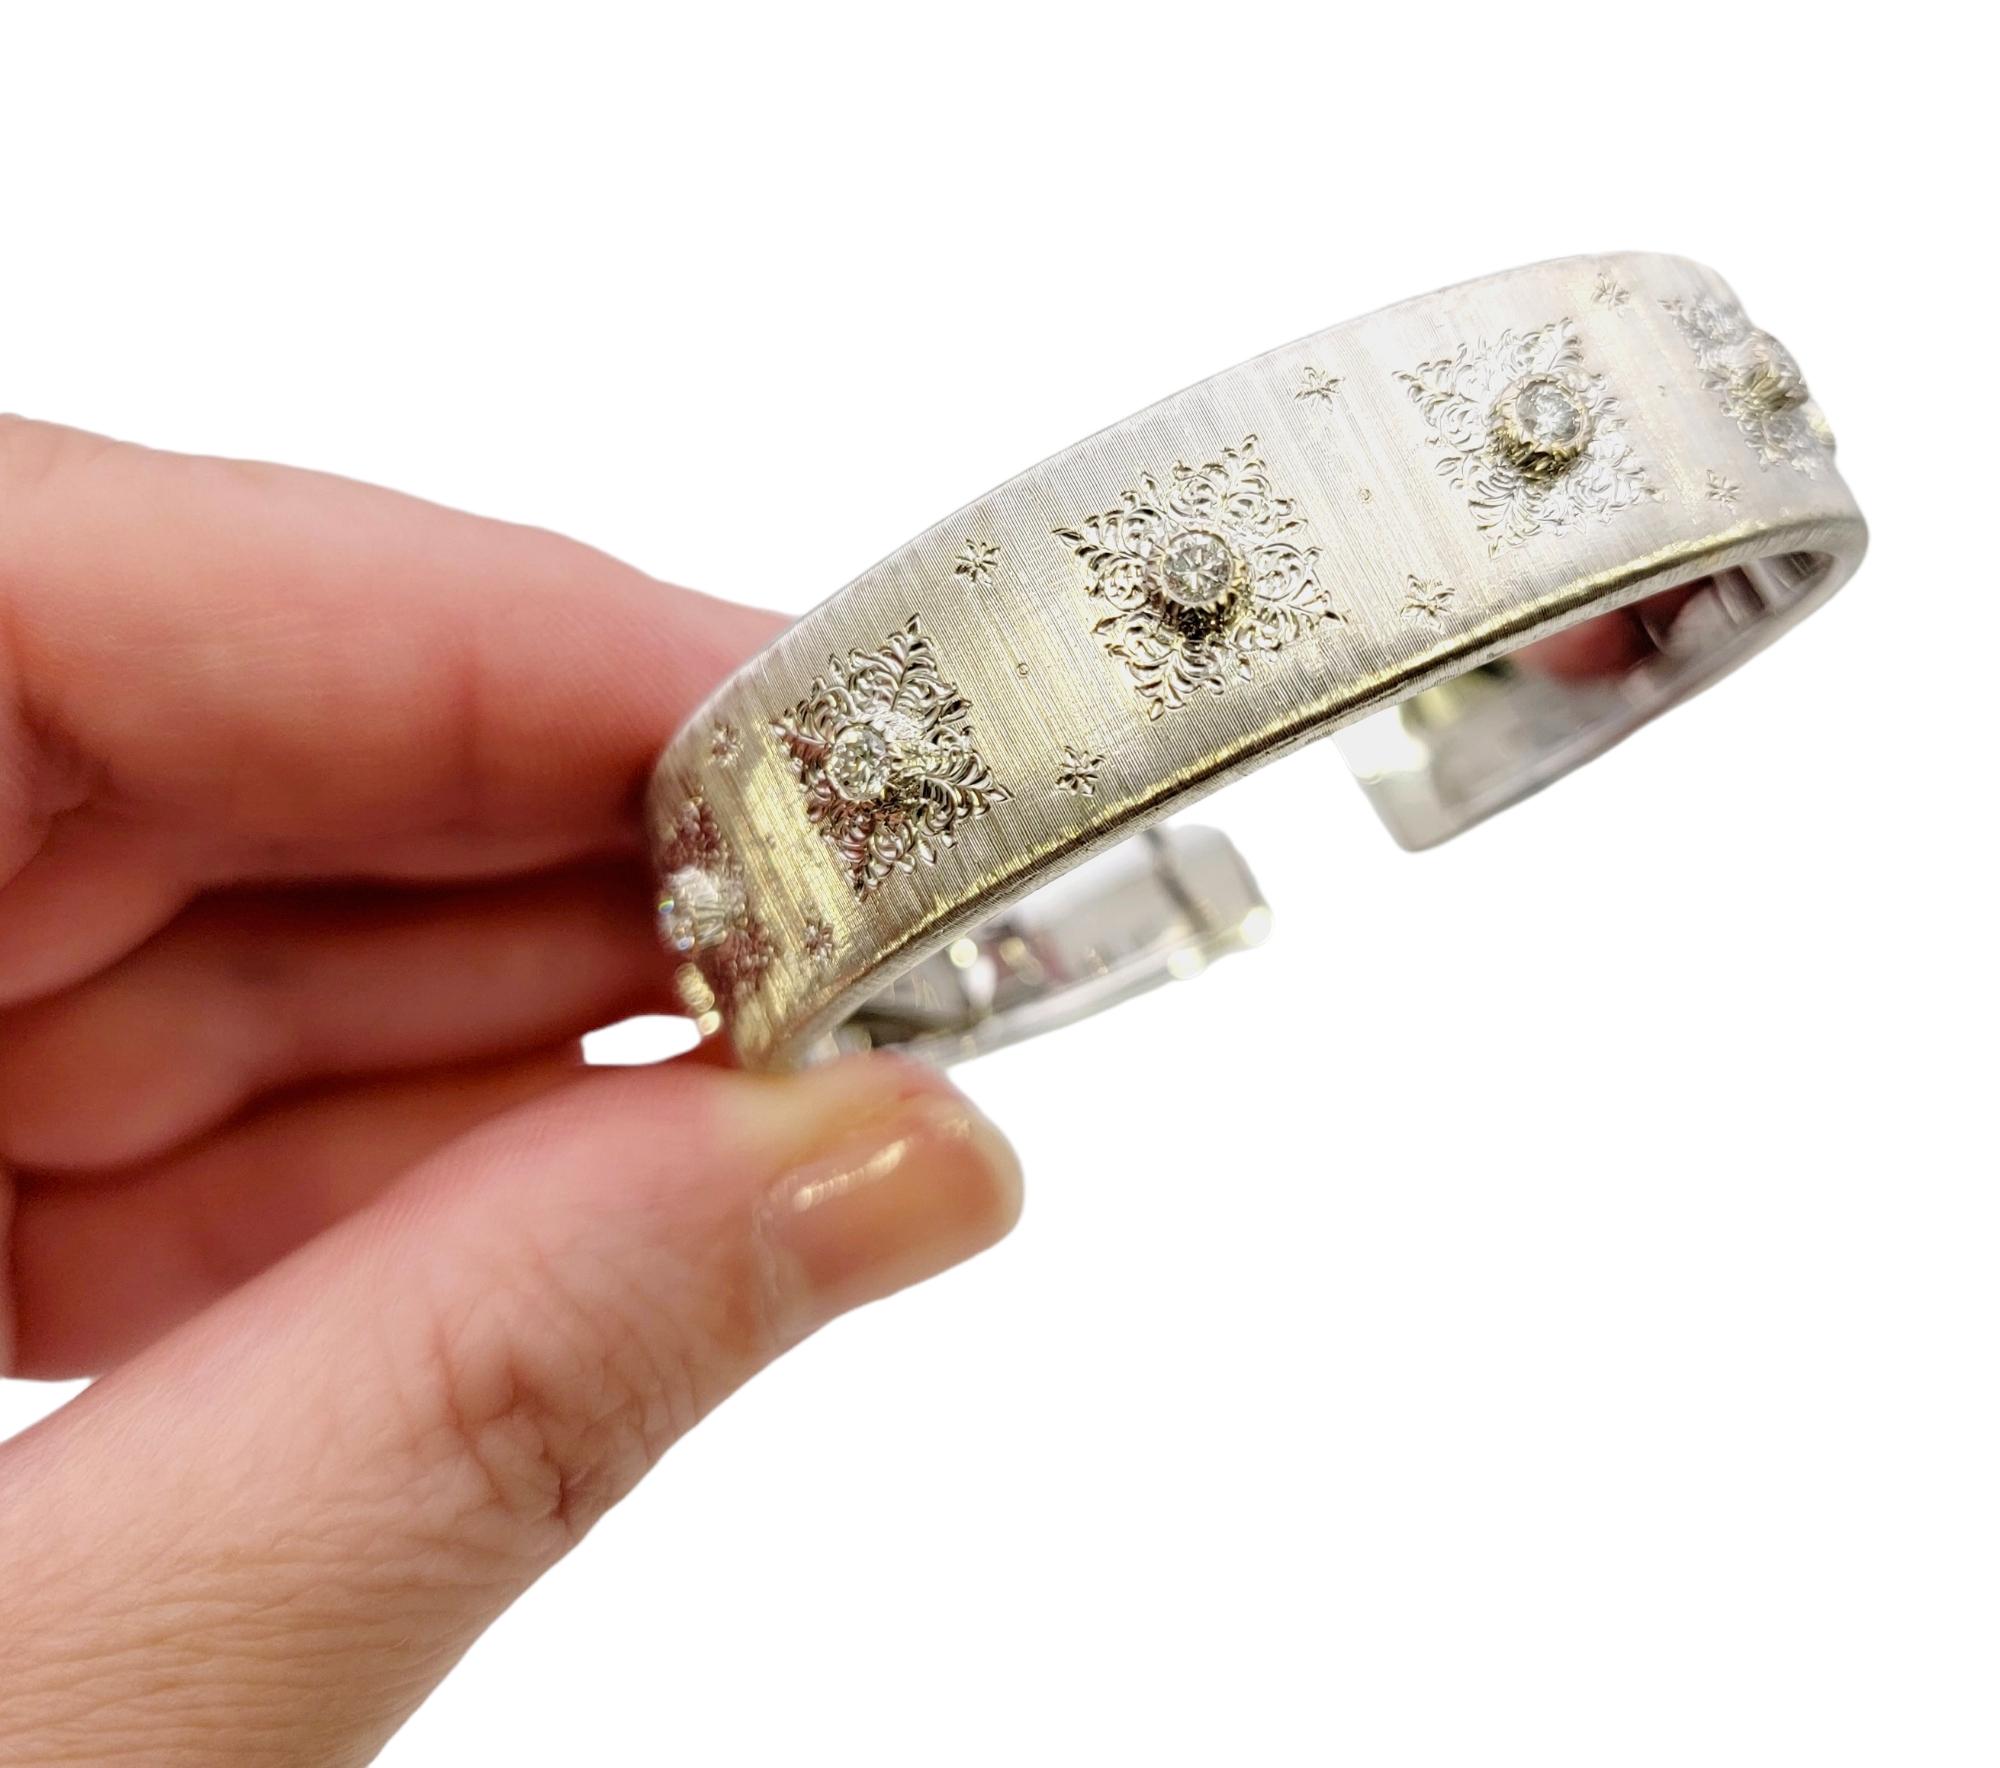 Mario Buccellati 18 Karat Rigato Finish White Gold and Diamond Cuff Bracelet For Sale 6